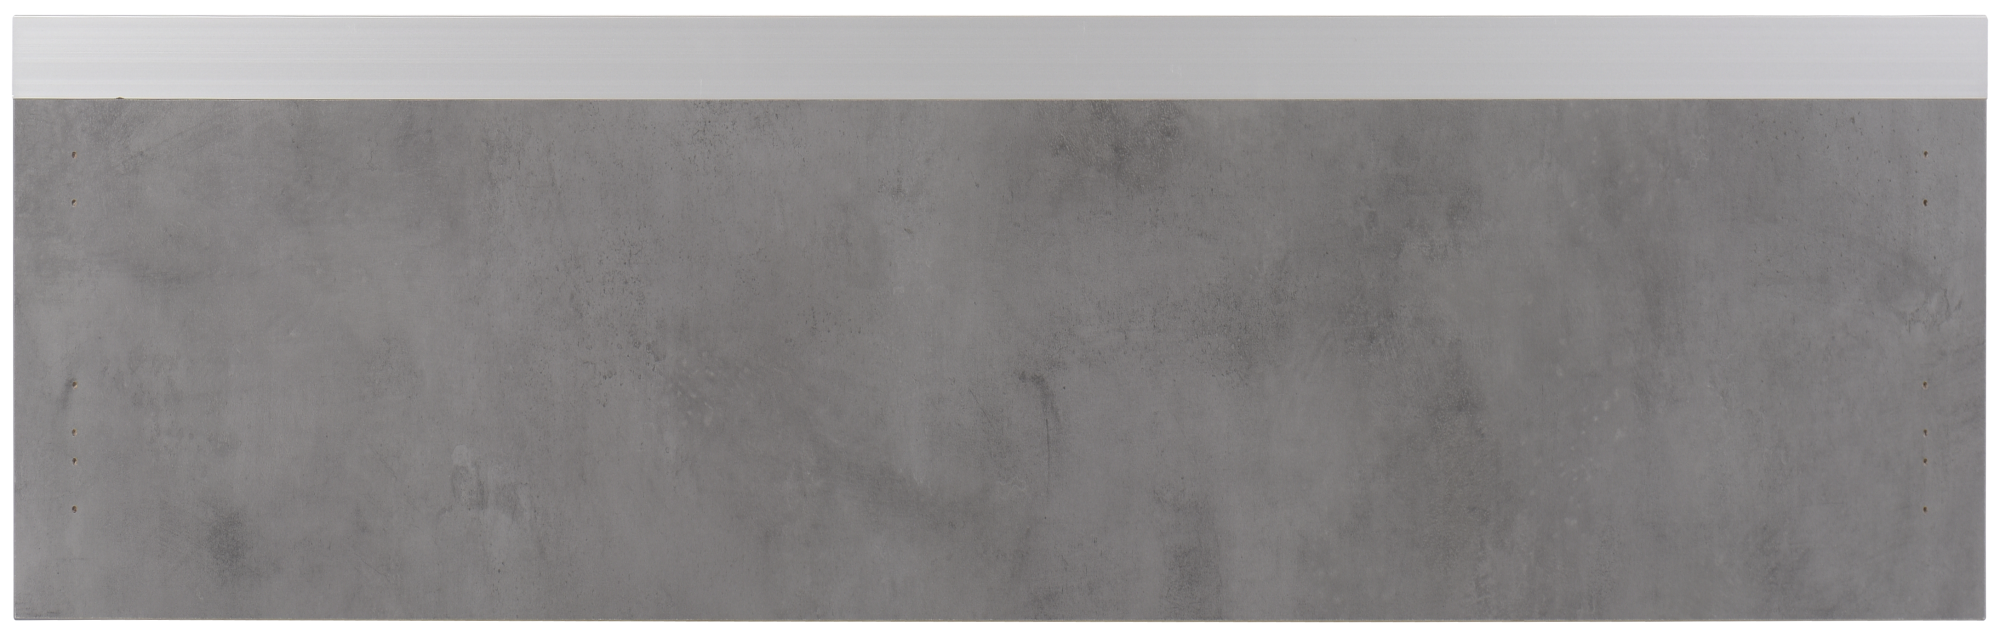 Frente para cajón mikonos cemento oscuro 79,7x25,3 cm